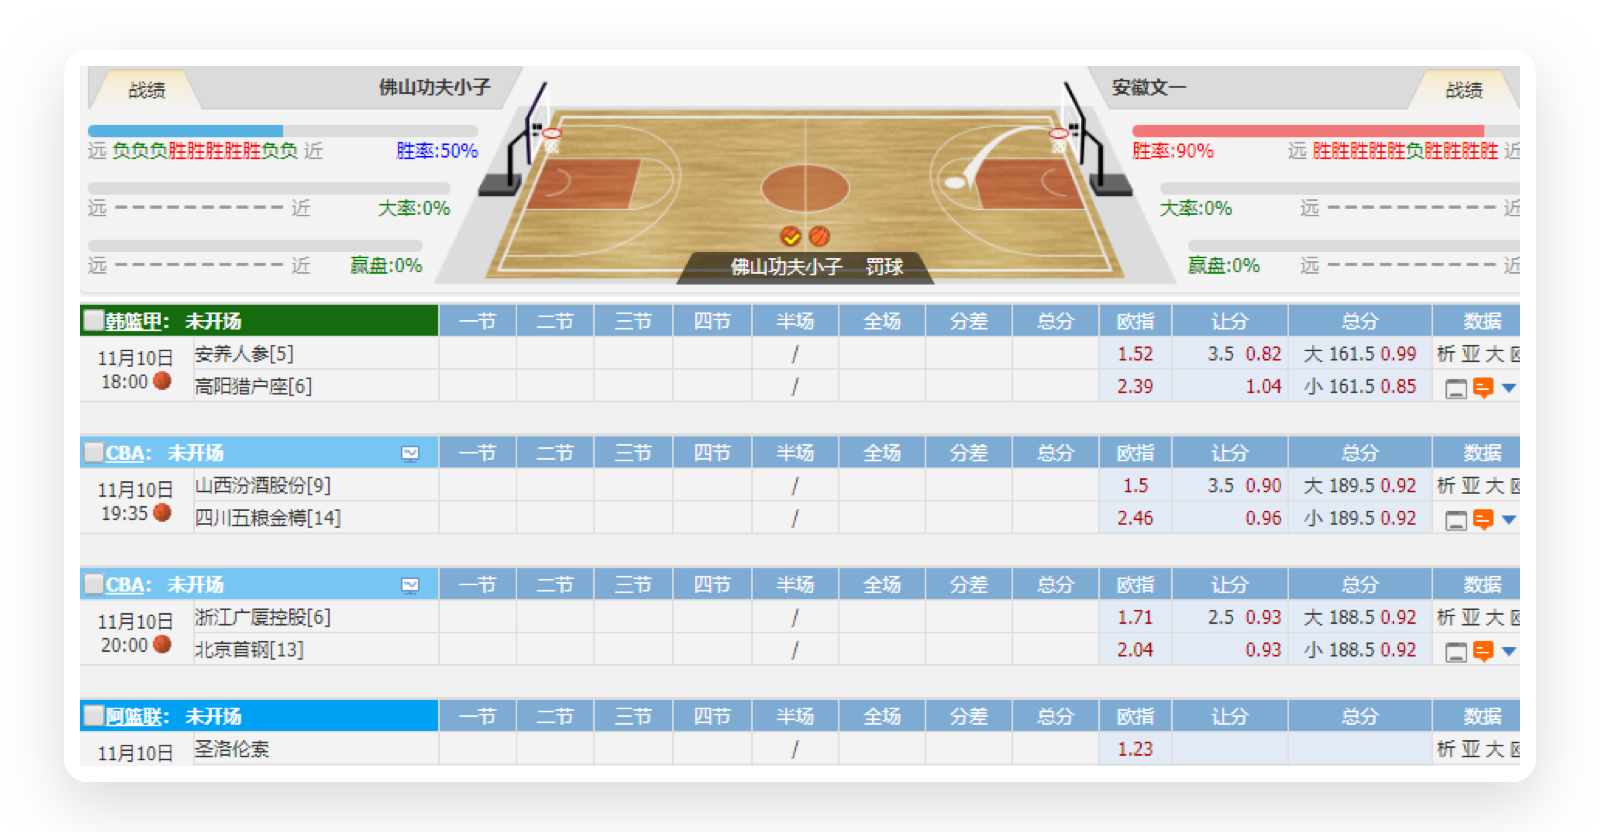 高清-2016NBA全明星扣篮大赛_NBA中国官方网站